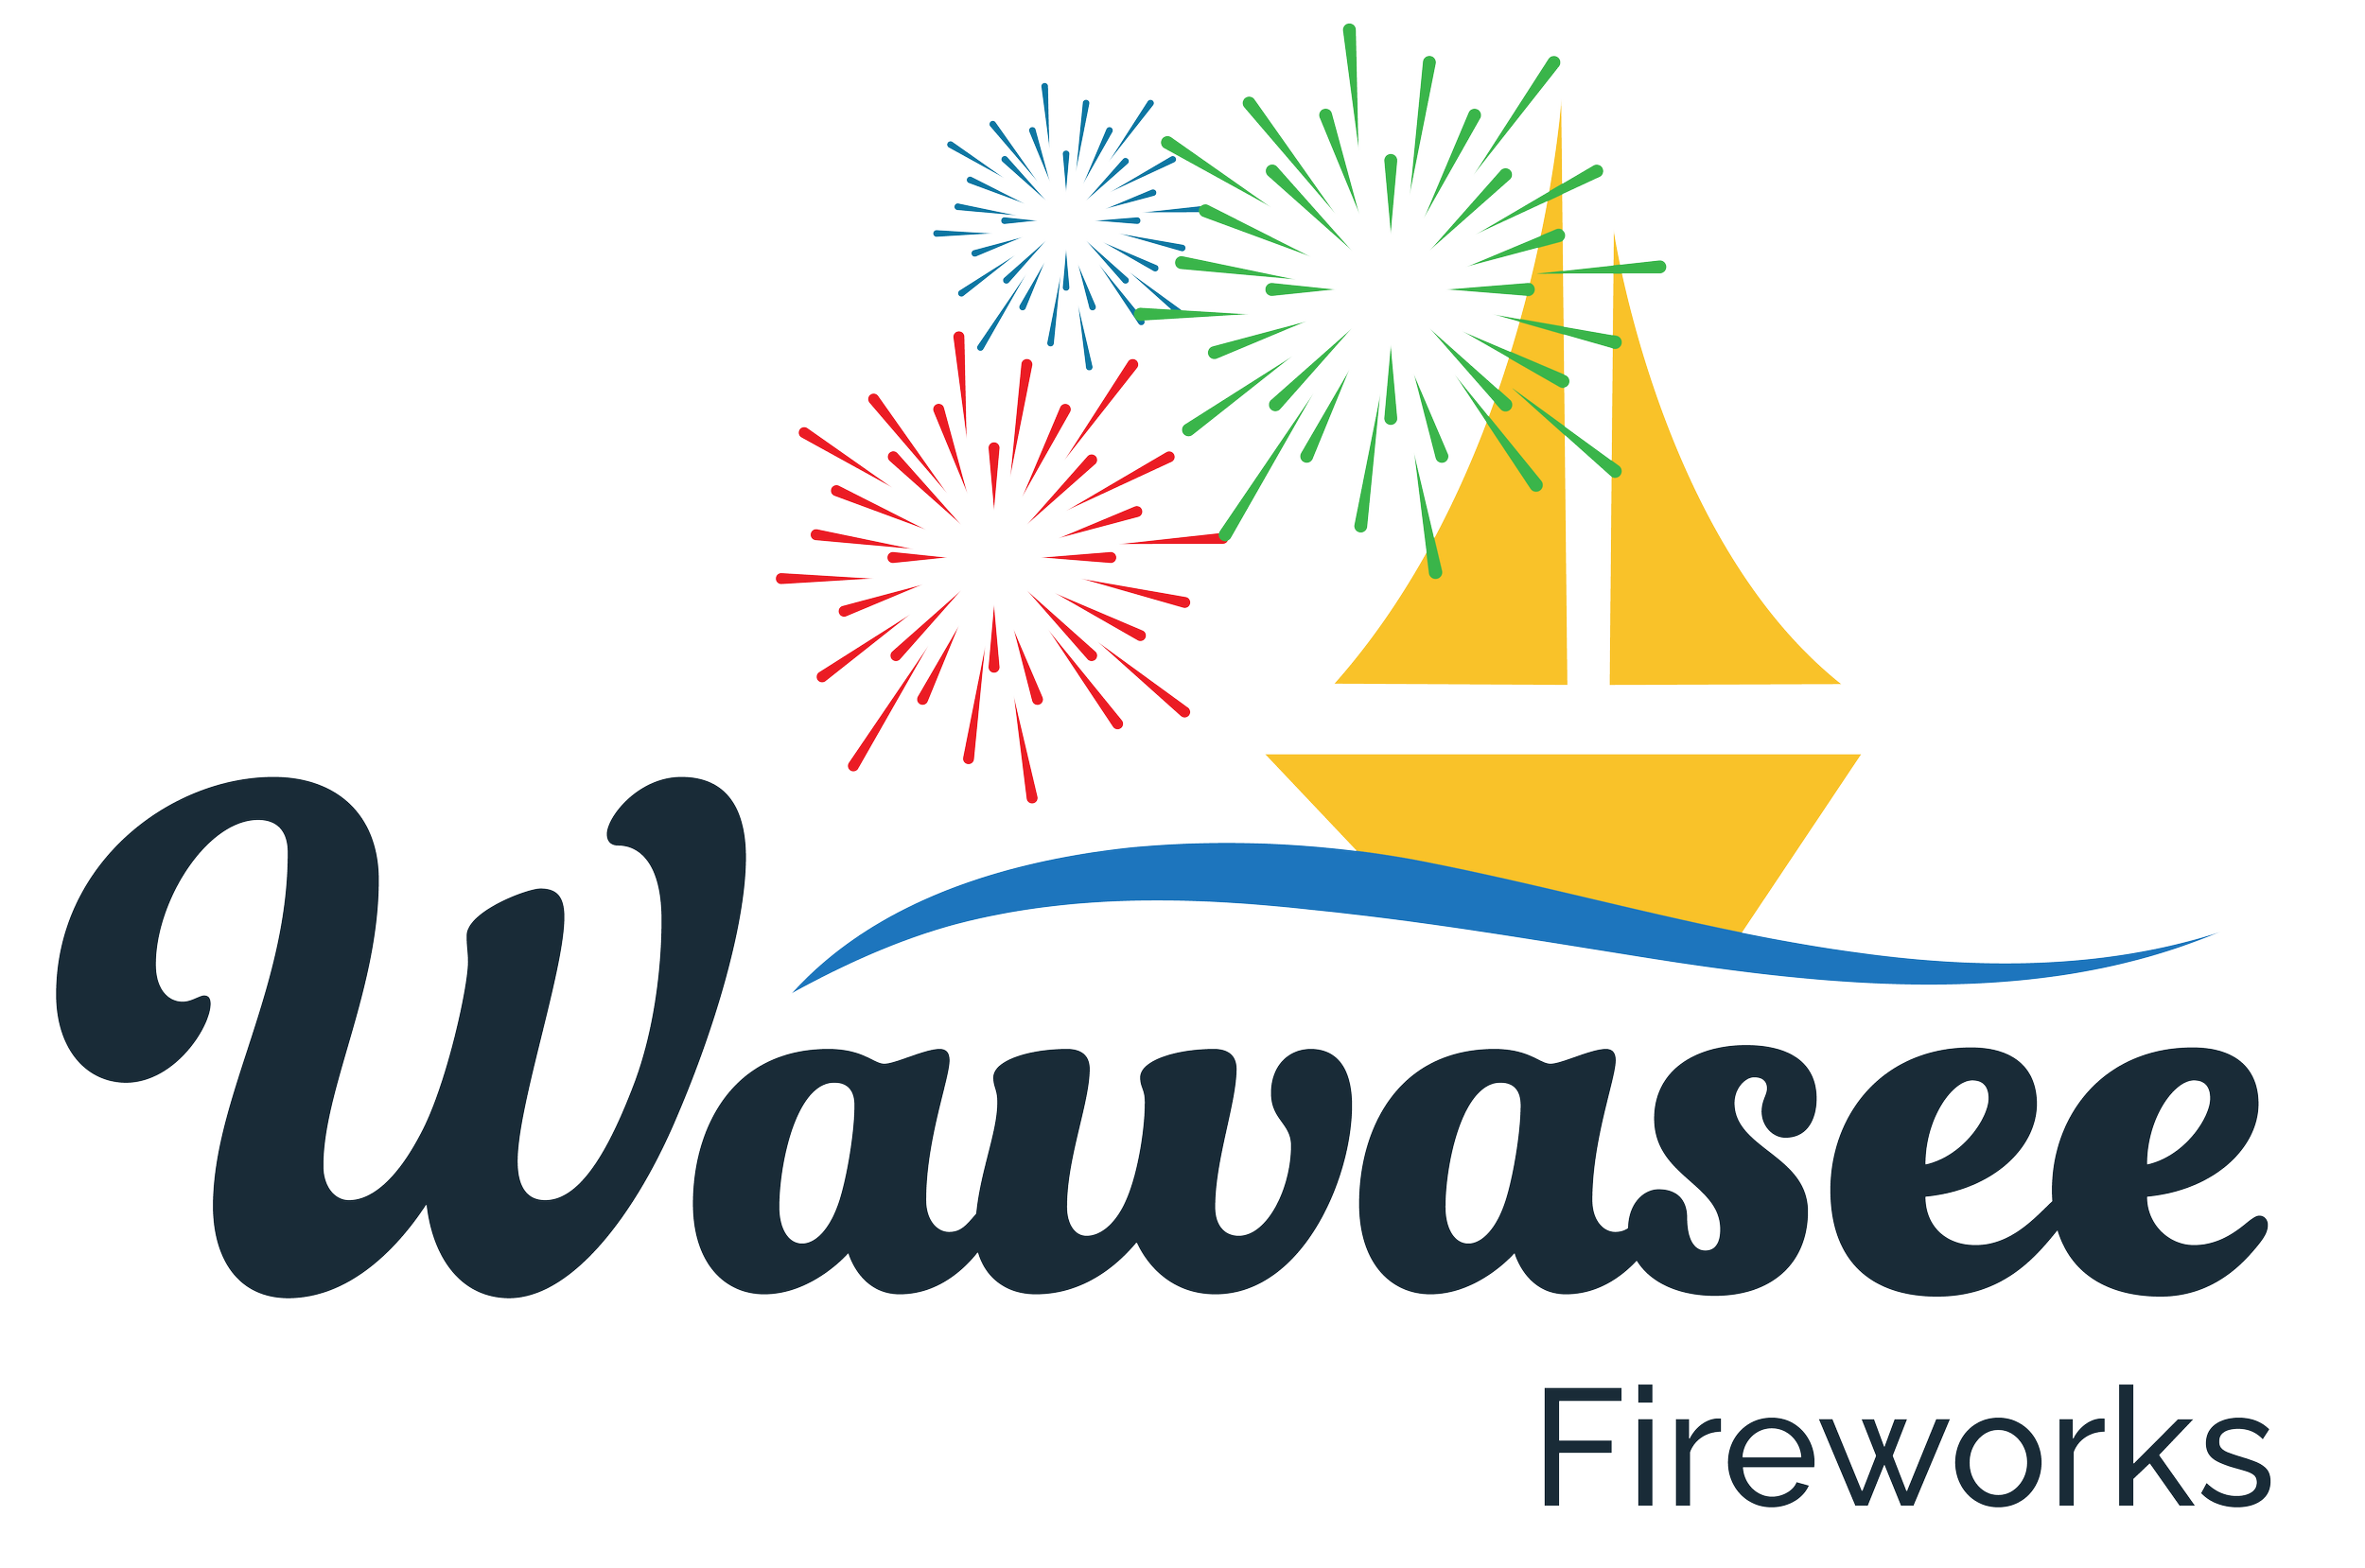 Lake Wawasee Fireworks